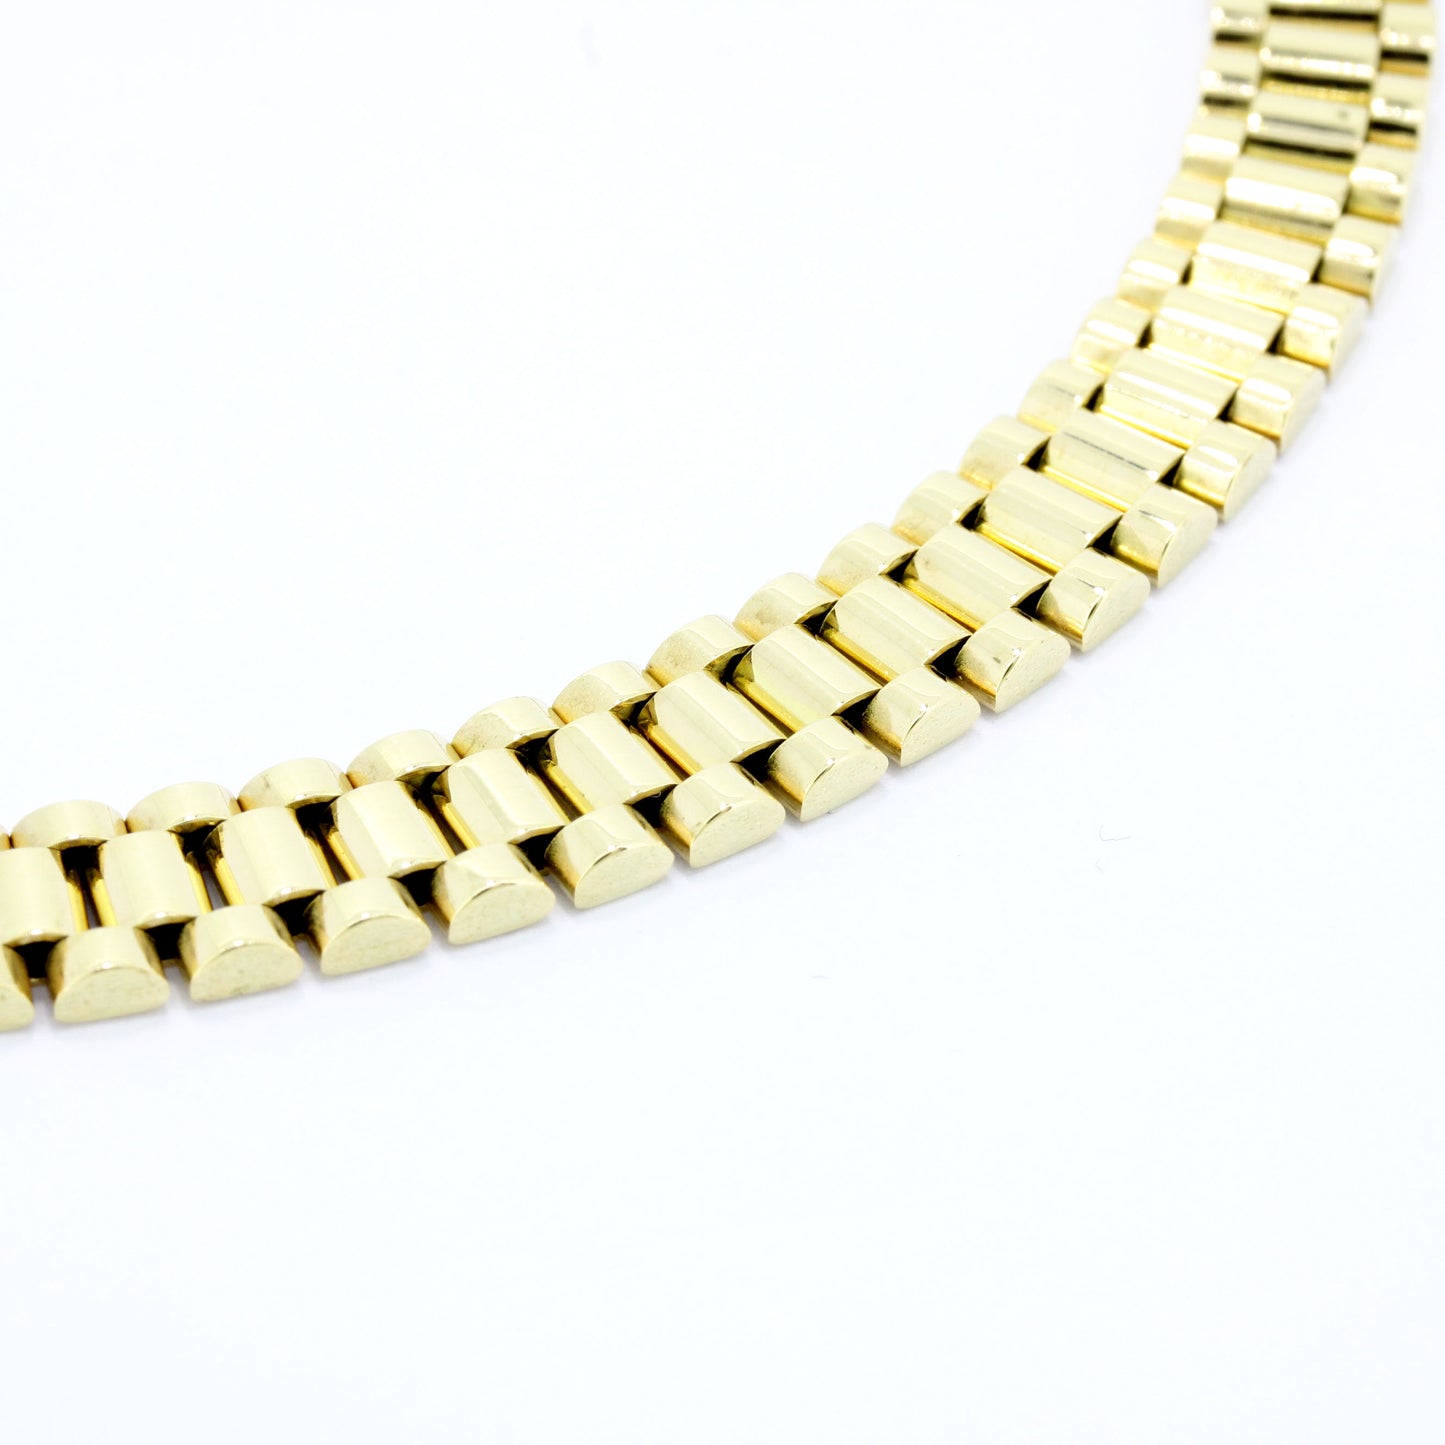 Präsidenten Armband 585 Gold 14 Kt Gelbgold - Armbandlänge 17,5 cm - Wert 2800,-